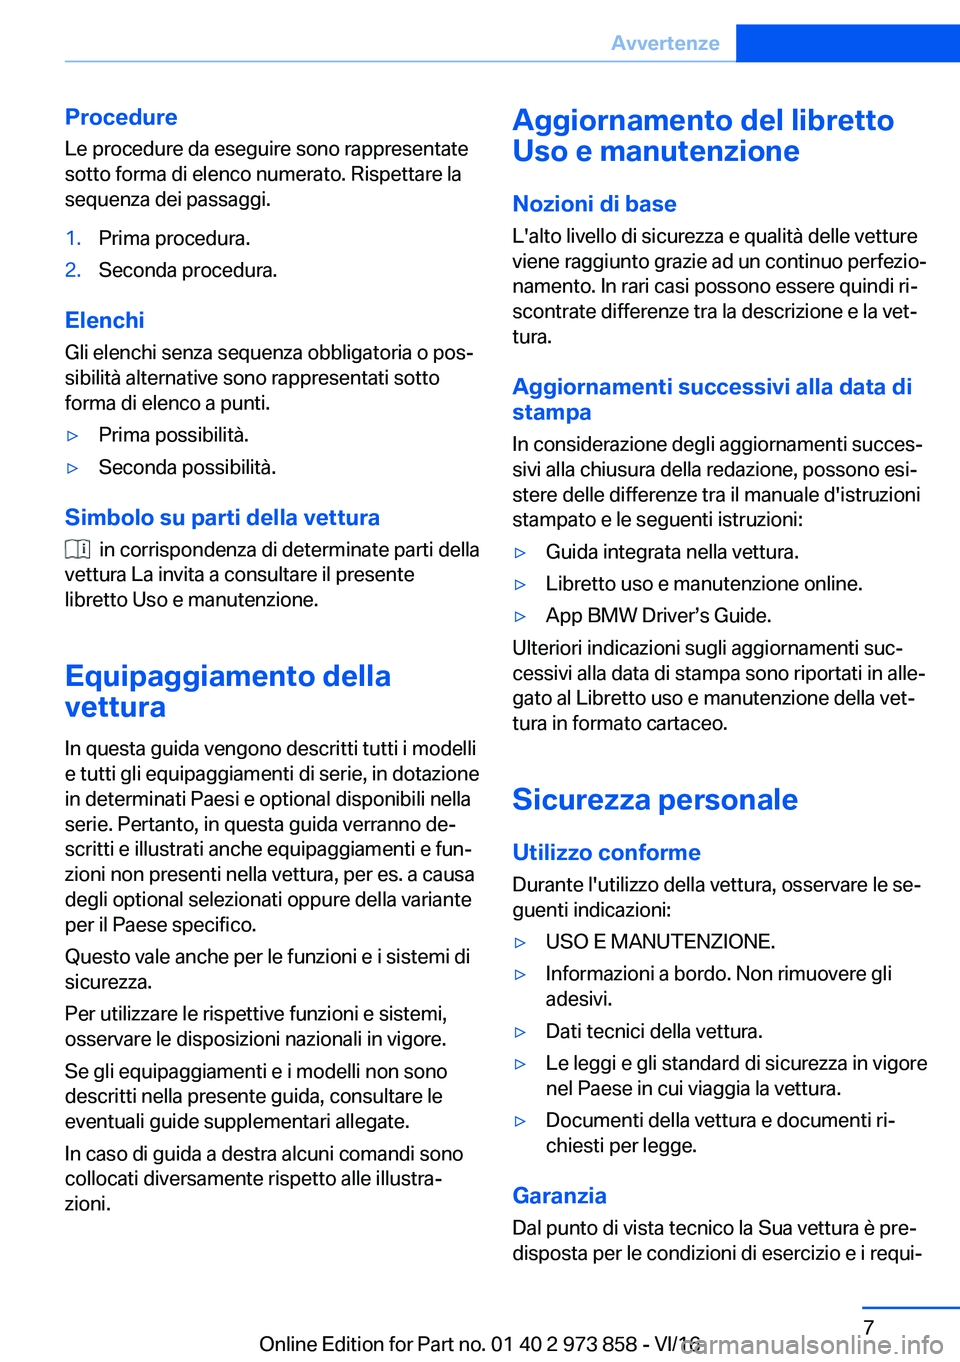 BMW 4 SERIES COUPE 2017  Libretti Di Uso E manutenzione (in Italian) �P�r�o�c�e�d�u�r�e�L�e� �p�r�o�c�e�d�u�r�e� �d�a� �e�s�e�g�u�i�r�e� �s�o�n�o� �r�a�p�p�r�e�s�e�n�t�a�t�e�s�o�t�t�o� �f�o�r�m�a� �d�i� �e�l�e�n�c�o� �n�u�m�e�r�a�t�o�.� �R�i�s�p�e�t�t�a�r�e� �l�a�s�e�q